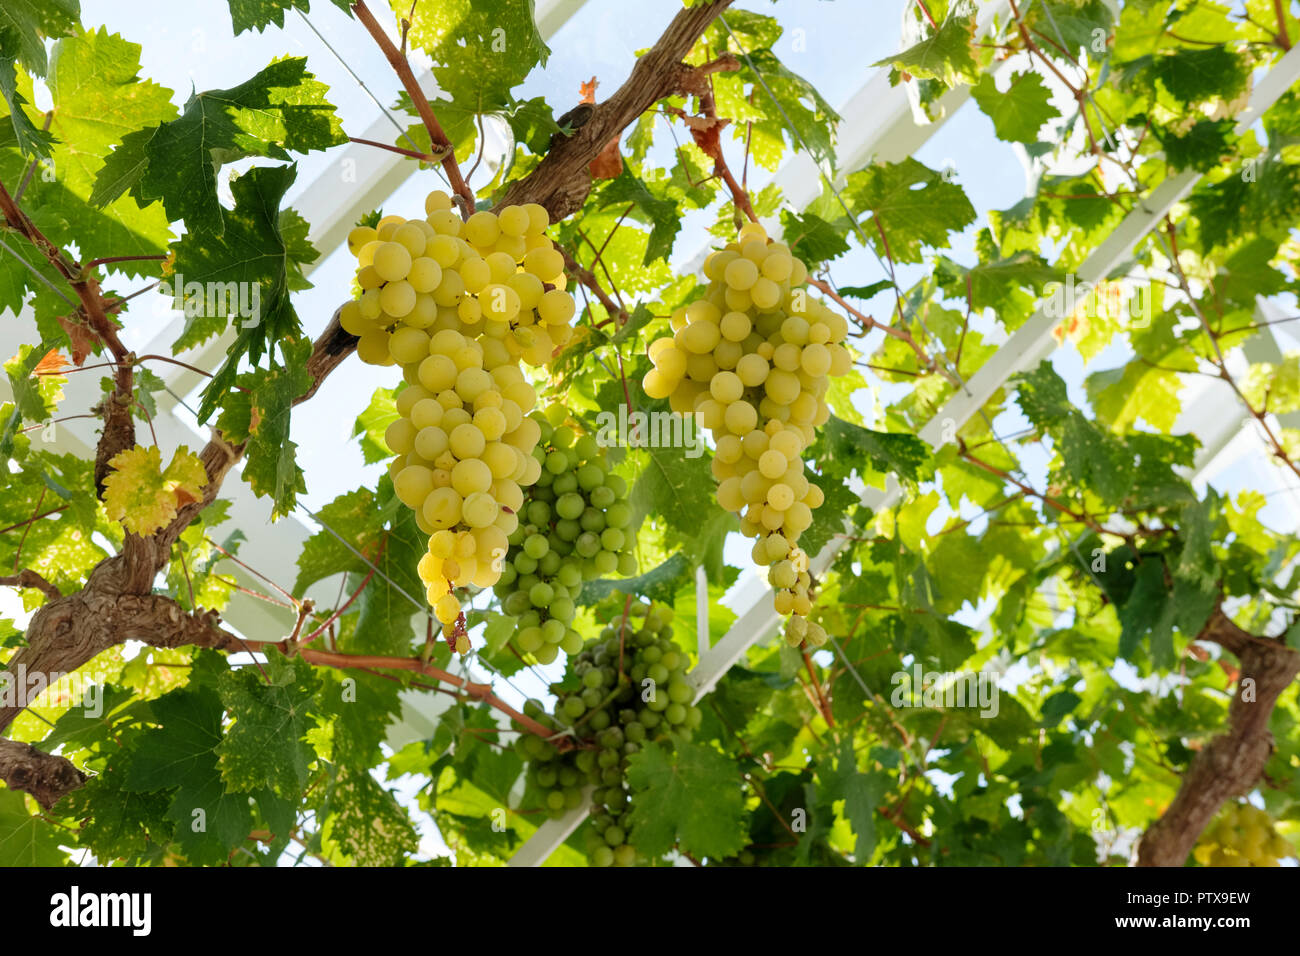 Green les raisins de table (Vitis vinifera) accrochée à la vigne en serre, Sussex, England, UK Banque D'Images